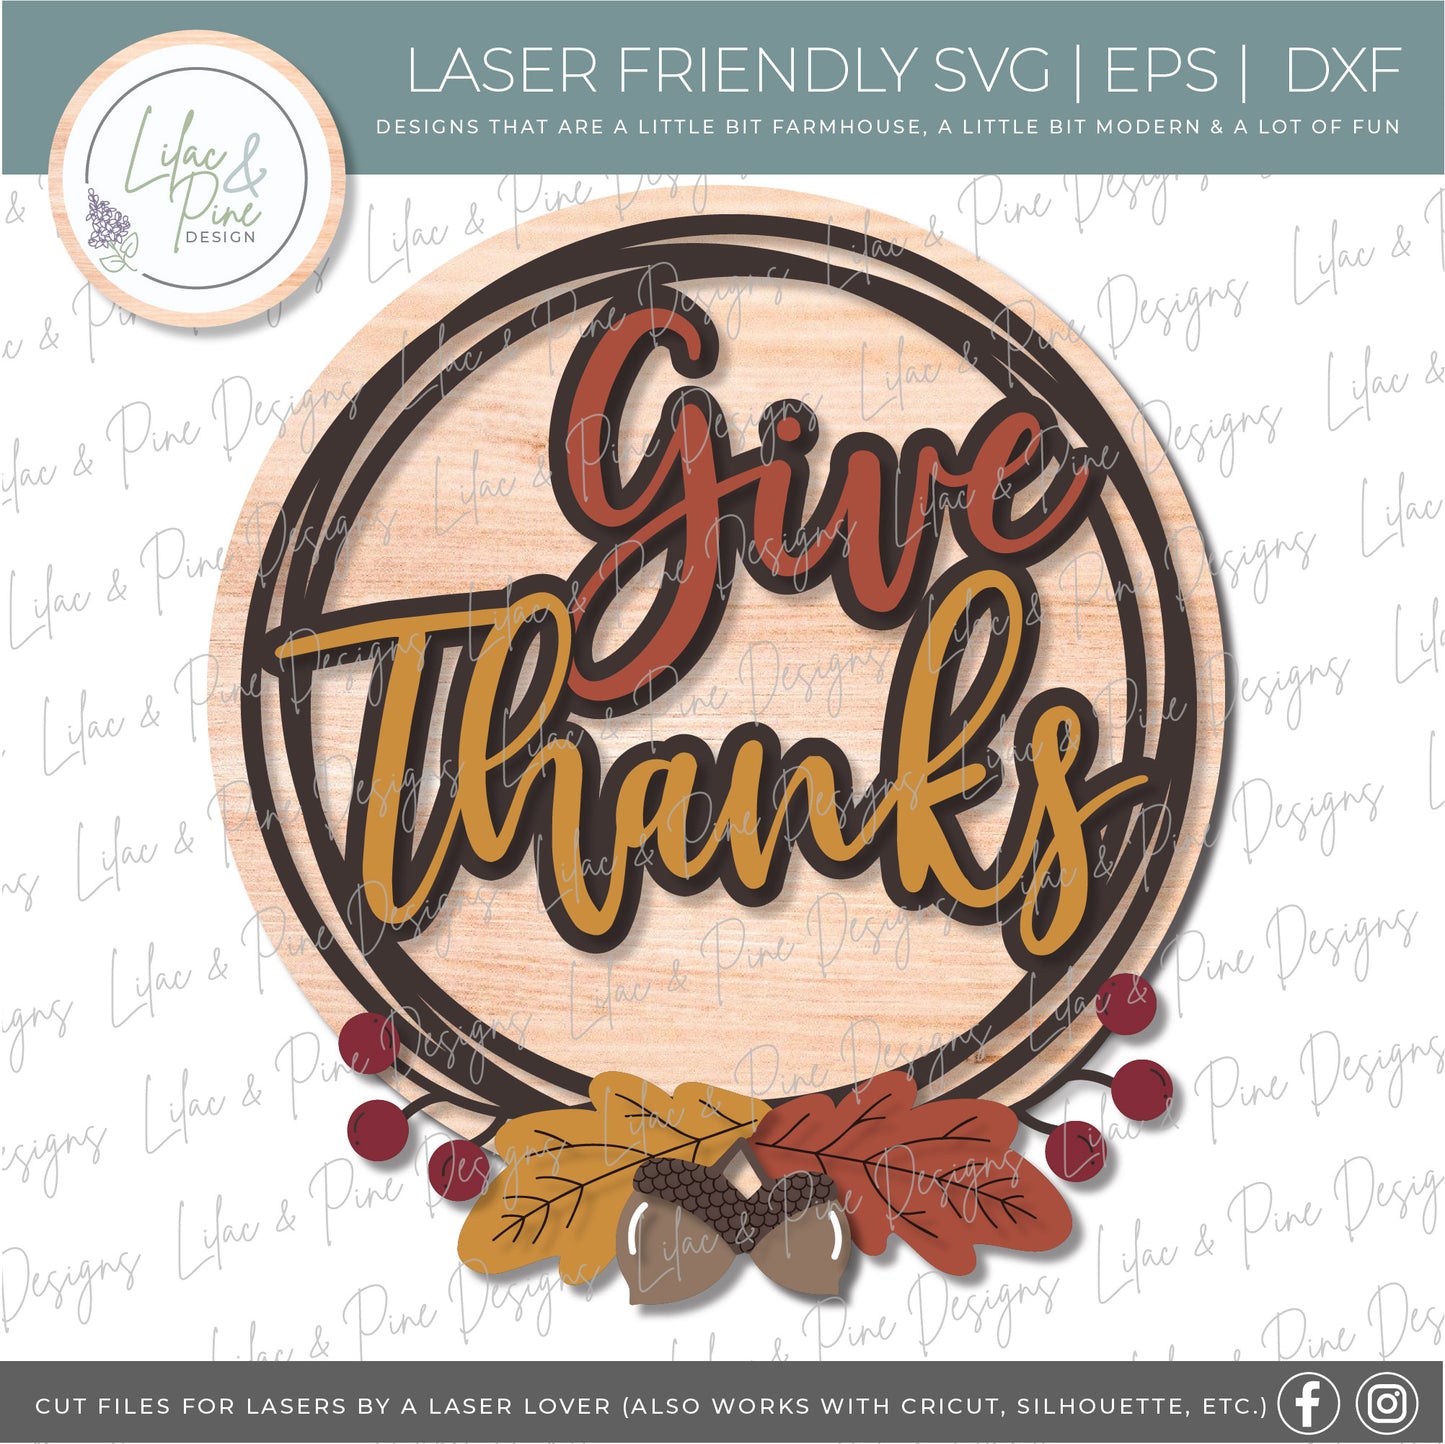 Give Thanks sign SVG, Fall sign SVG, Thanksgiving decor, Thanksgiving wreath SVG, fall leaves svg, acorn svg, Glowforge Svg, laser cut file